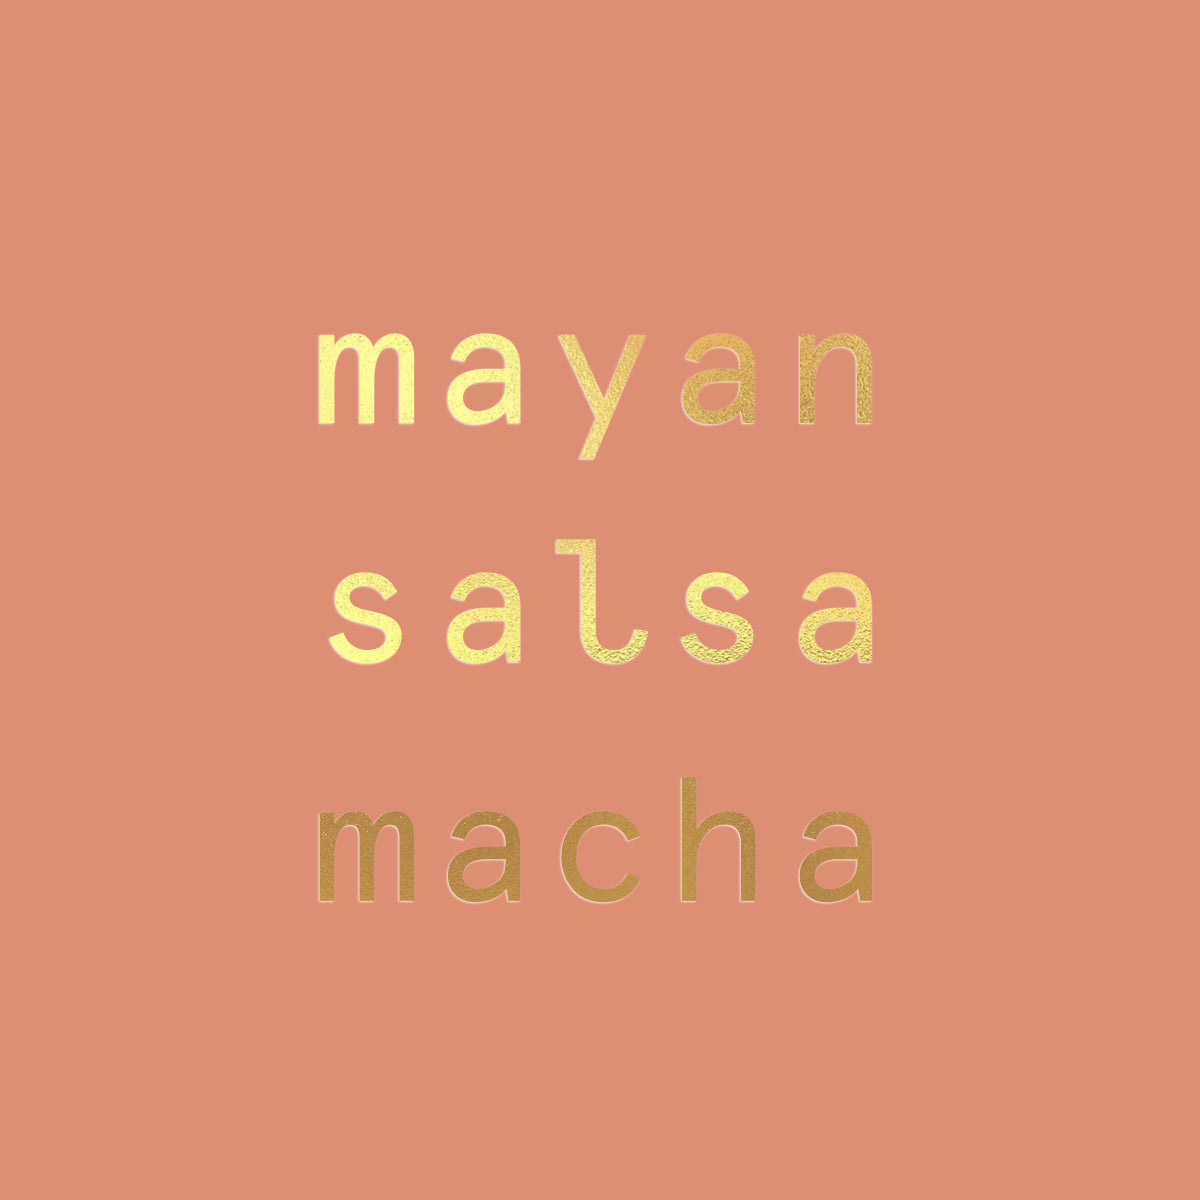 Mayan Salsa Macha